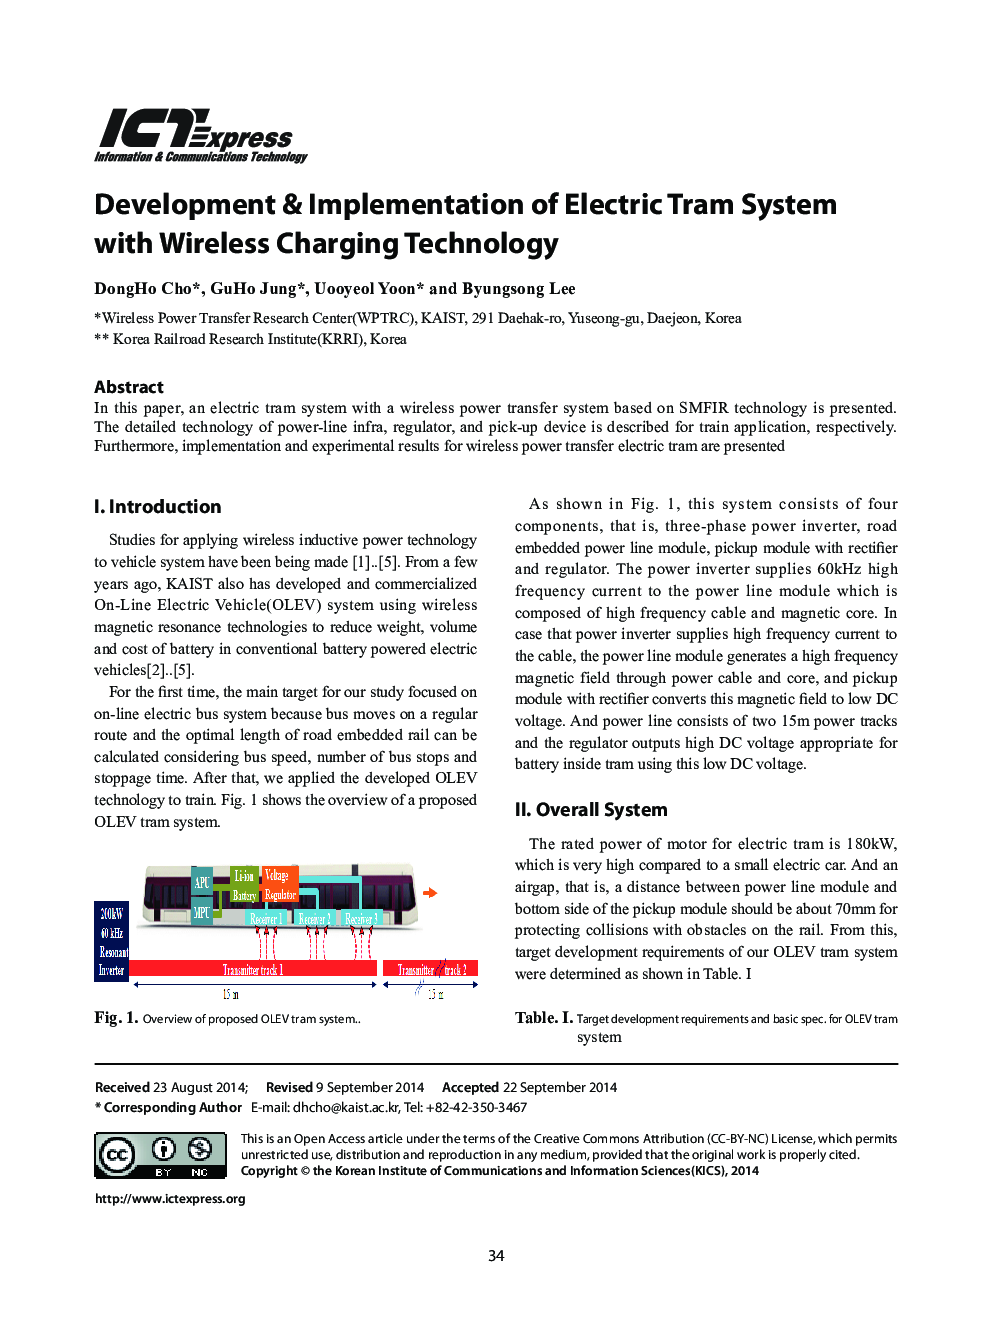 توسعه و پیاده سازی سیستم تراموا الکتریکی با تکنولوژی شارژ بی سیم 